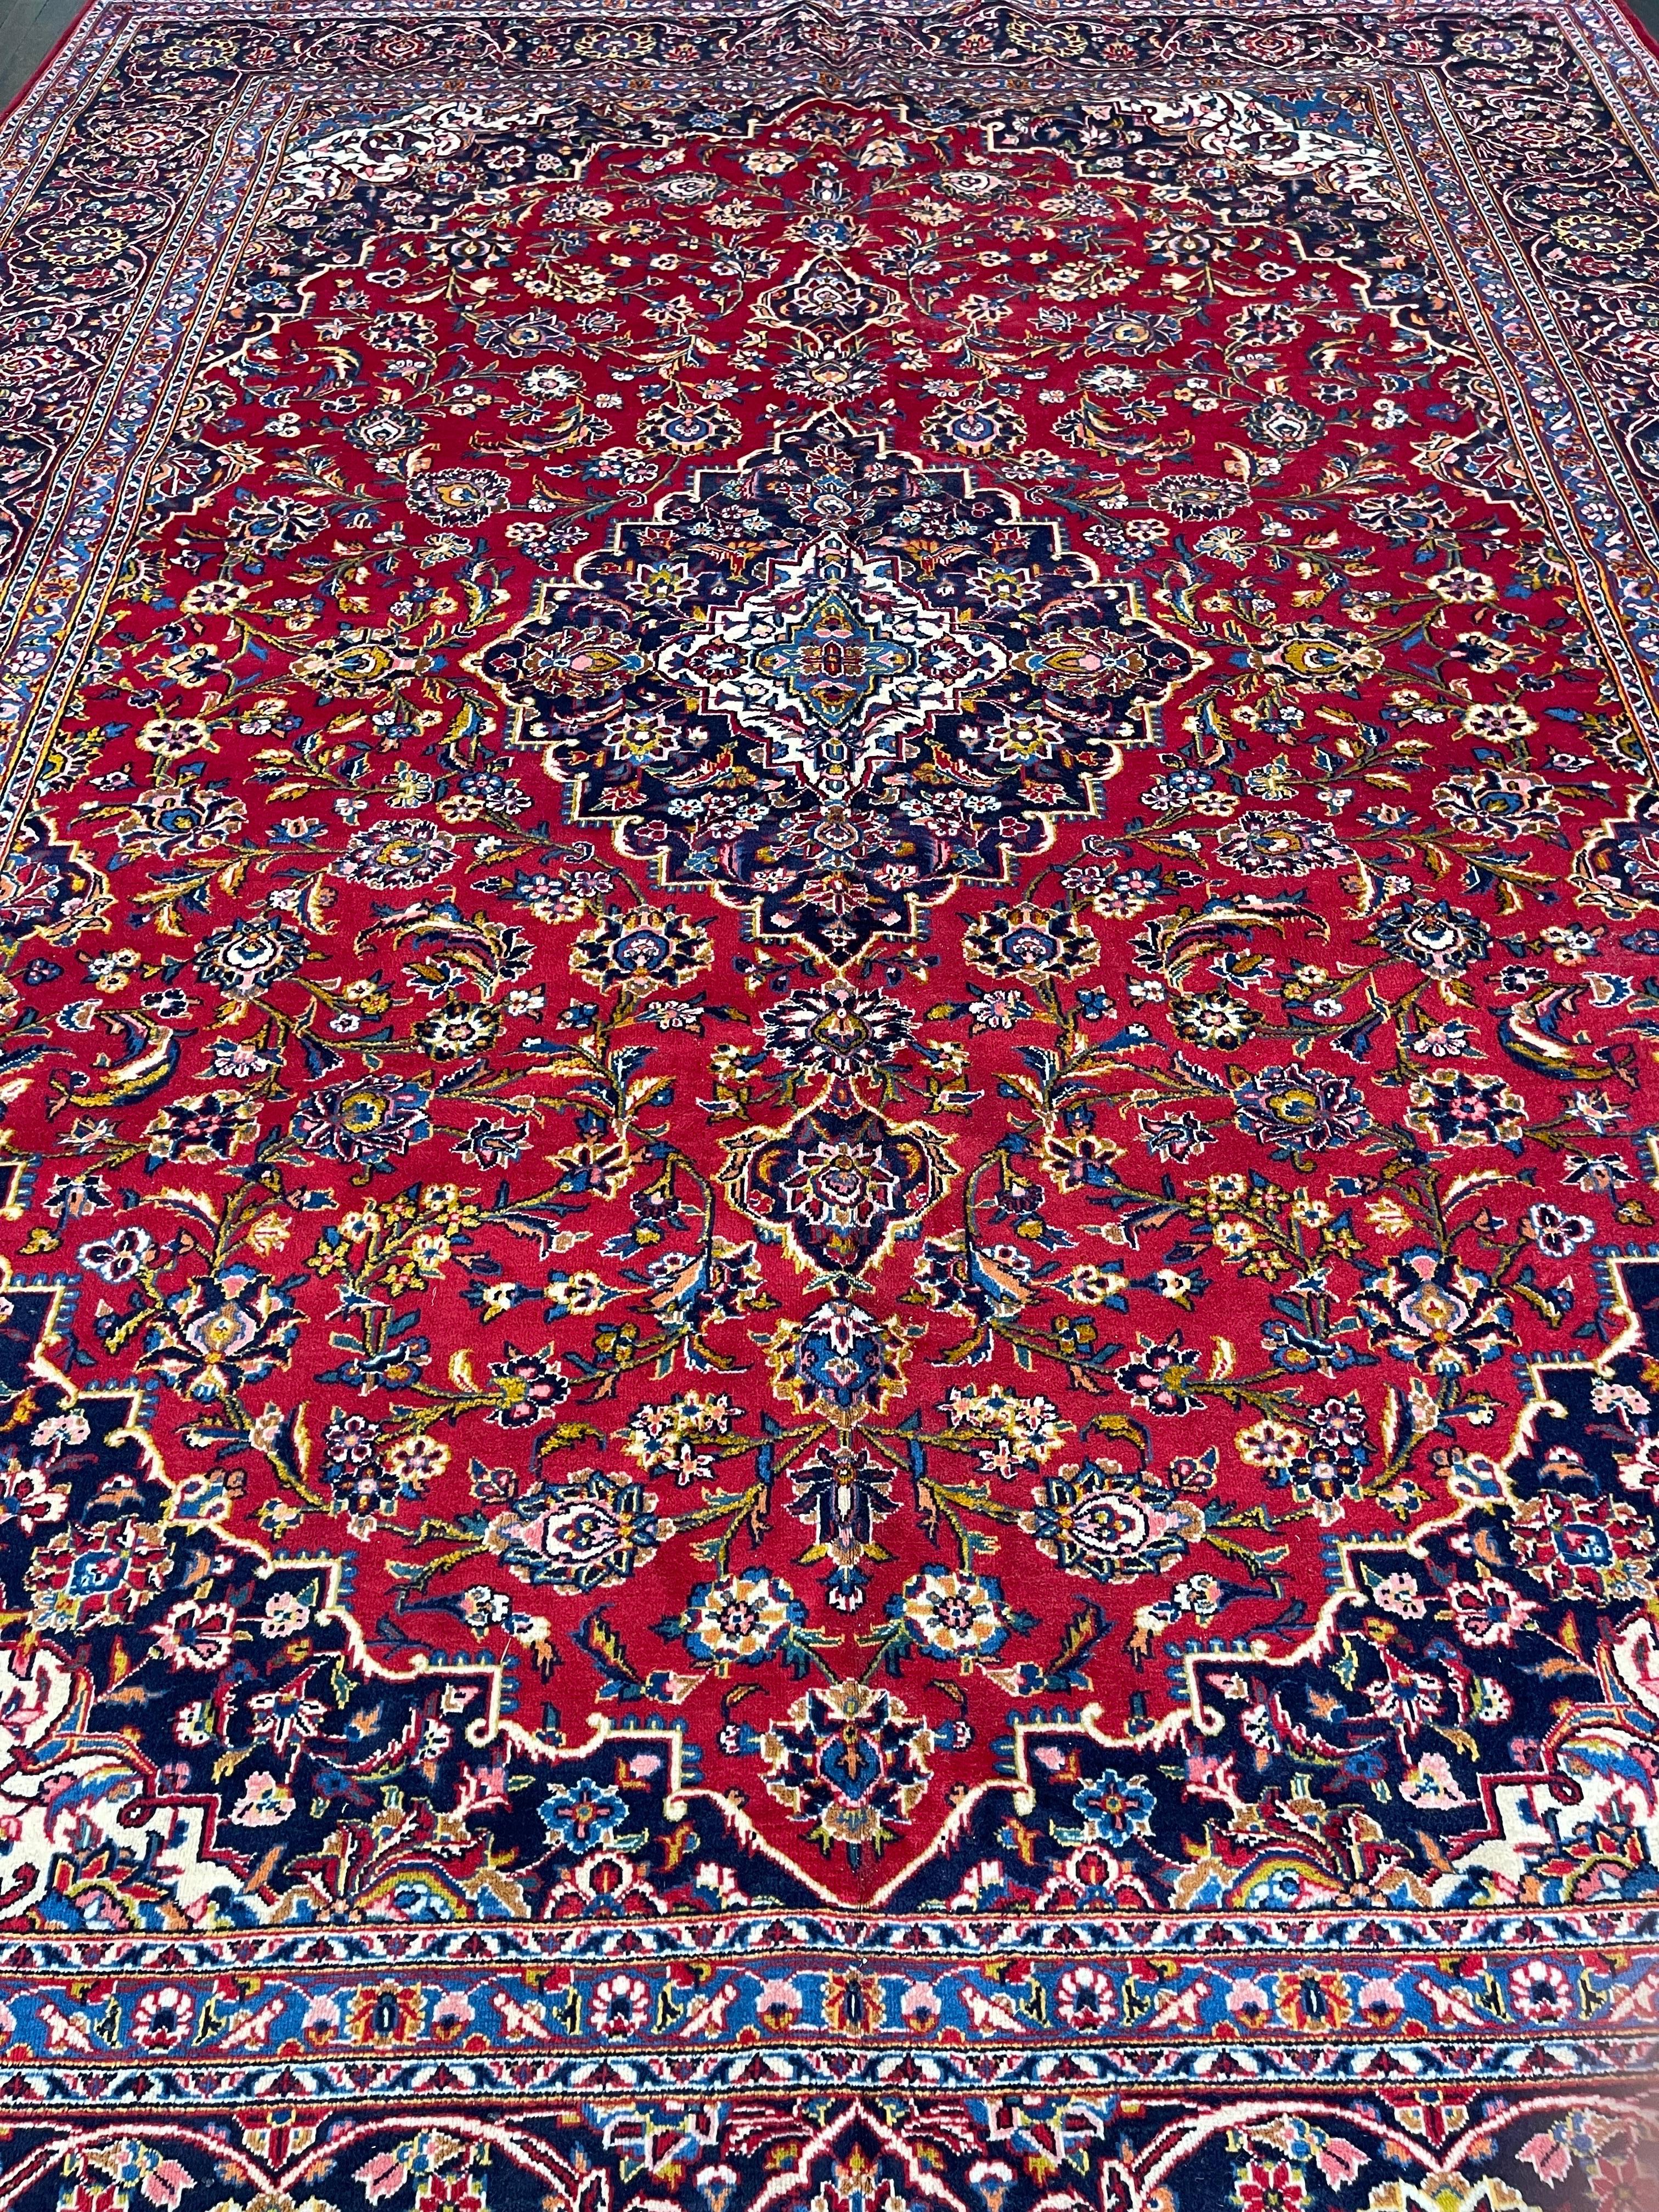 Tapis persan noué à la main dans l'un des principaux centres de fabrication de tapis en Iran, ce Kashan présente un champ rouge tomate décoré de fleurs et de feuilles, ainsi qu'un médaillon bleu marine entouré d'une bordure bleu indigo.

La laine